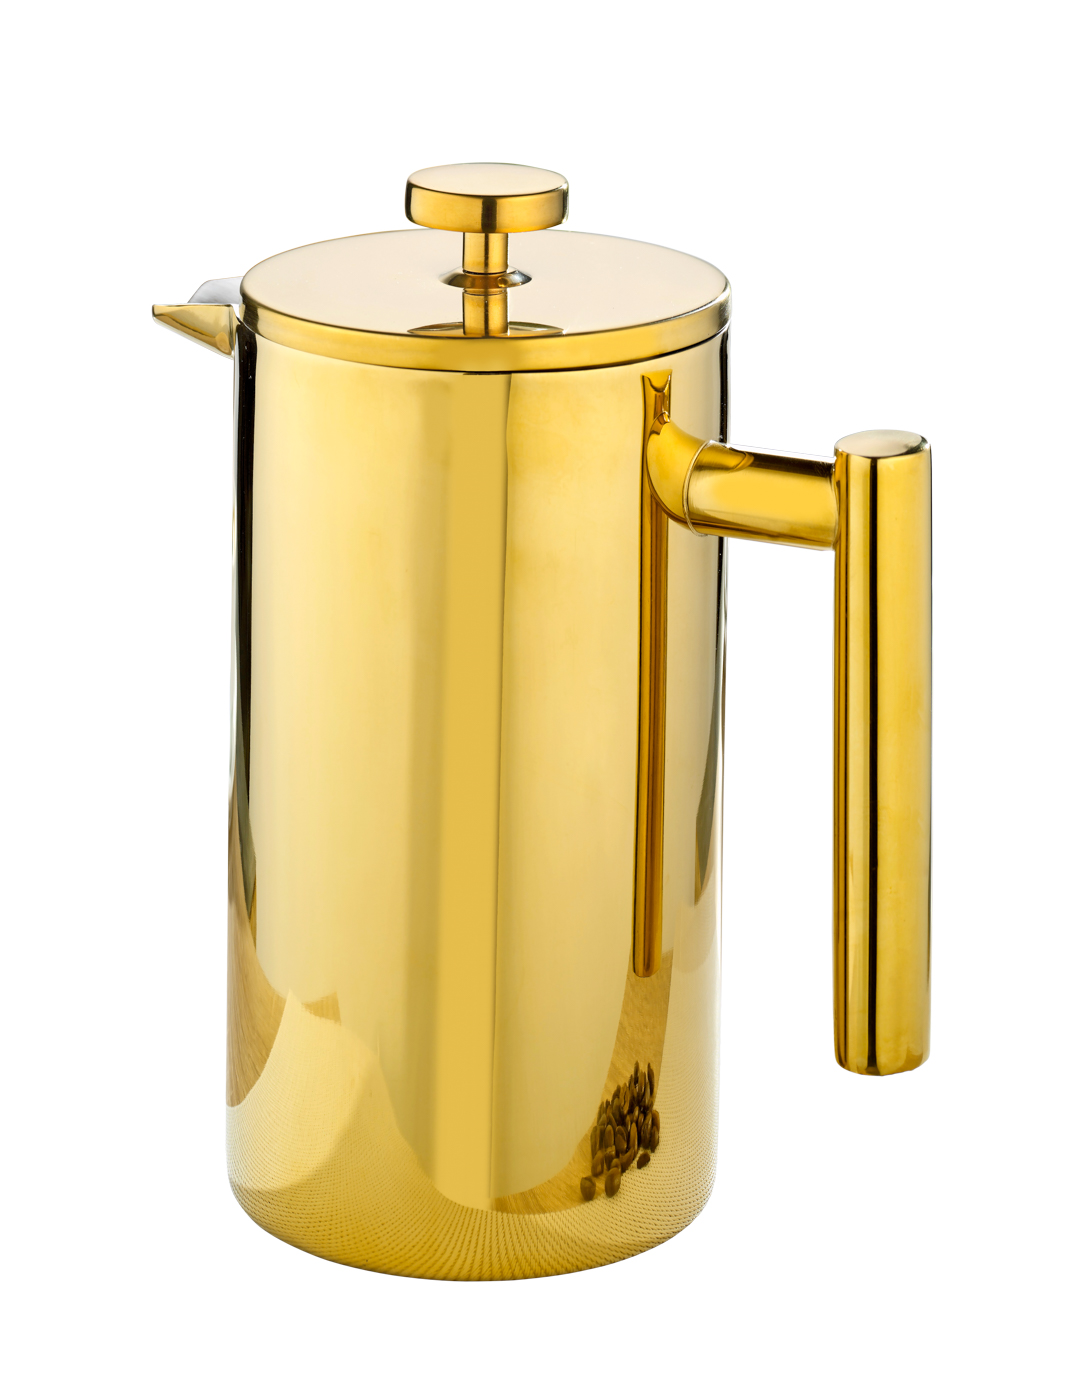 Kaffeekanne STRATFORD, Edelstahl, 1 Liter, mit goldfarbener PVD-Beschichtung